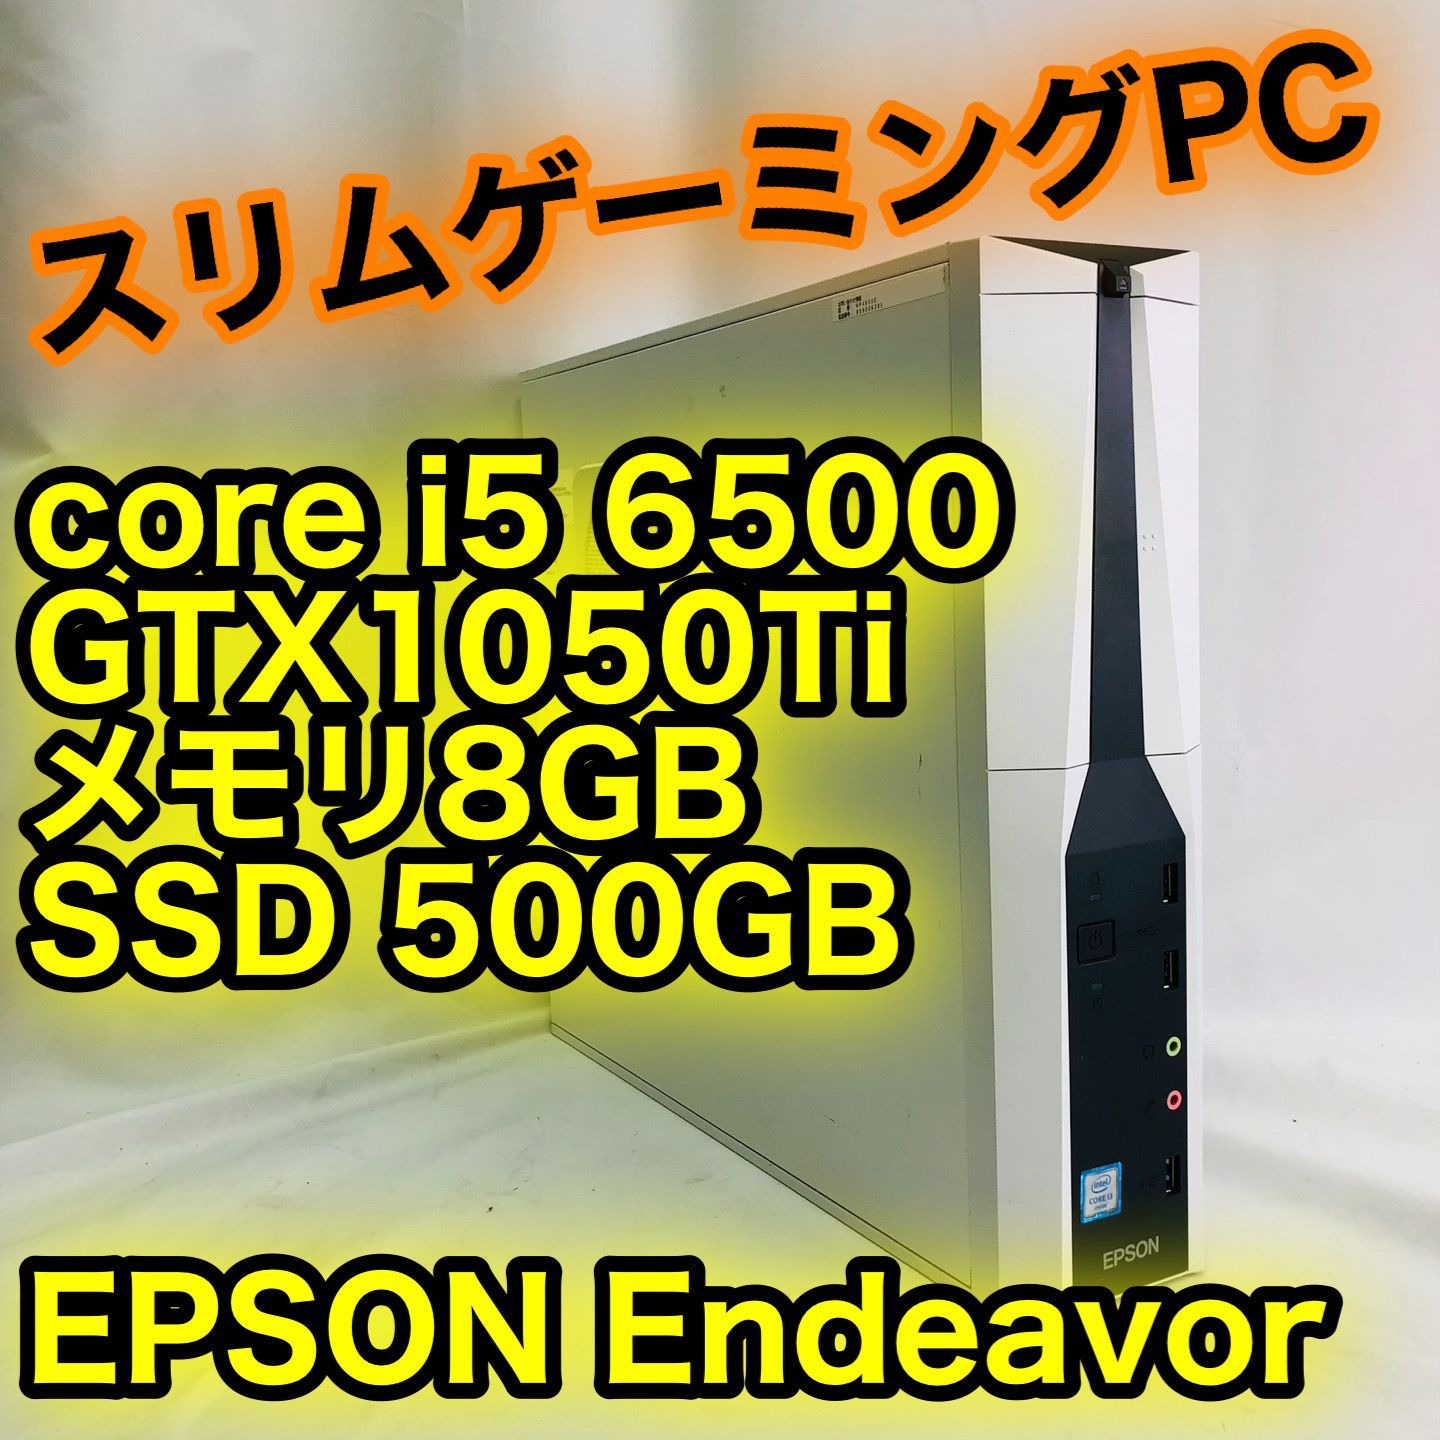 エプソン Endeavoer core i5 6500　8GB